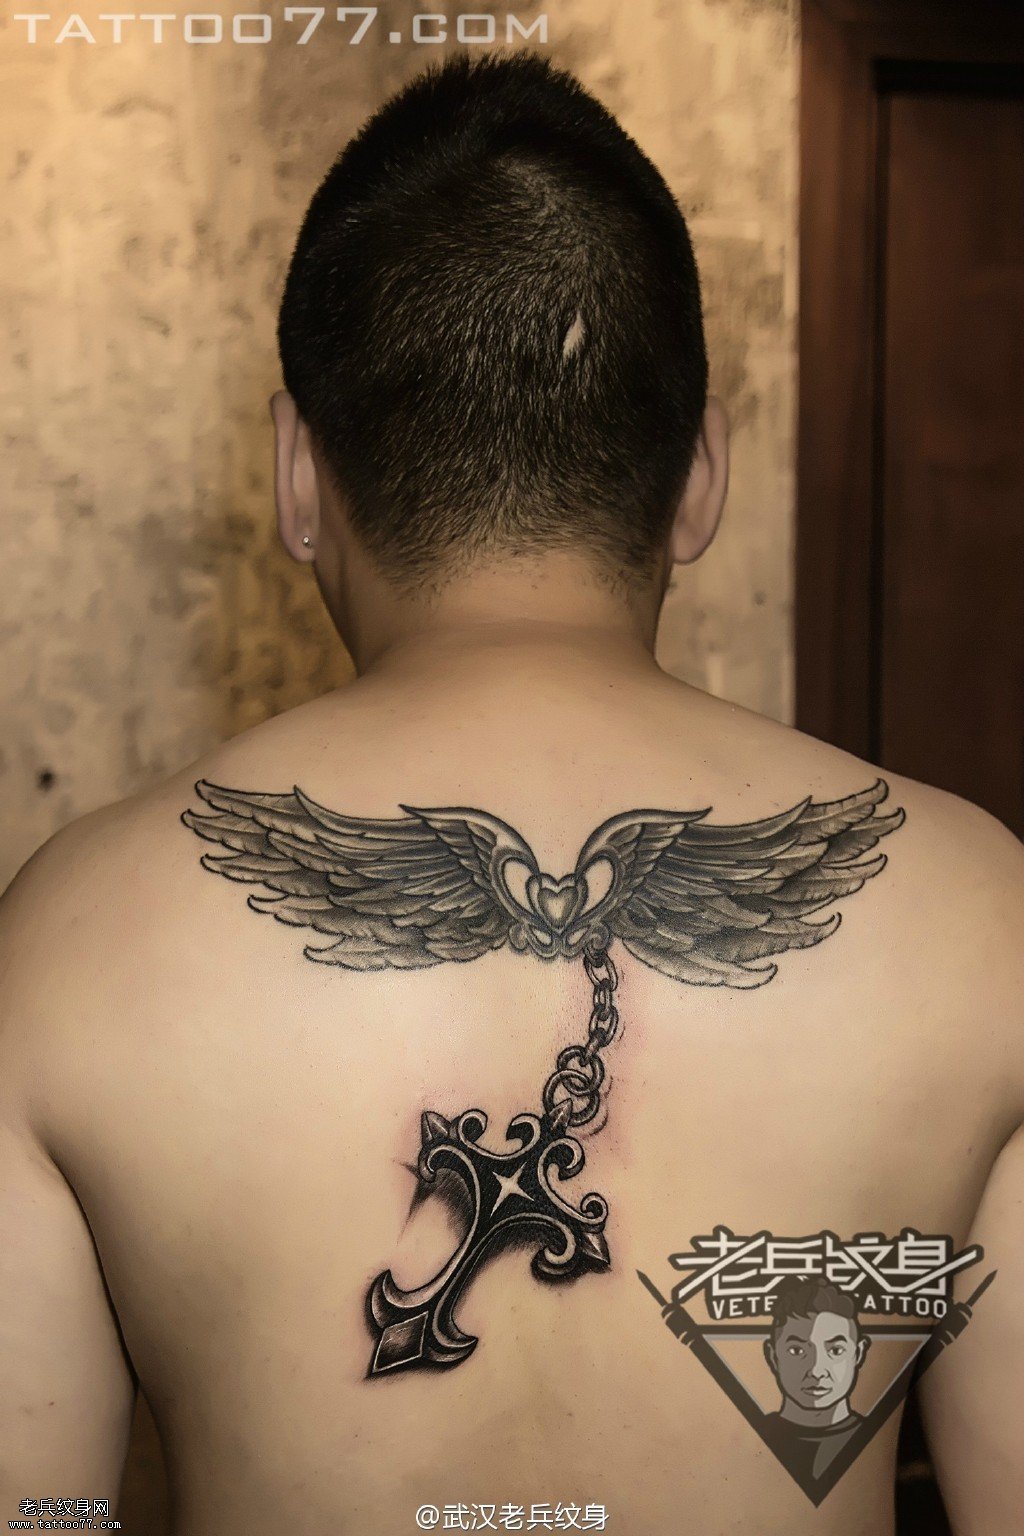 后背翅膀十字架纹身图案作品